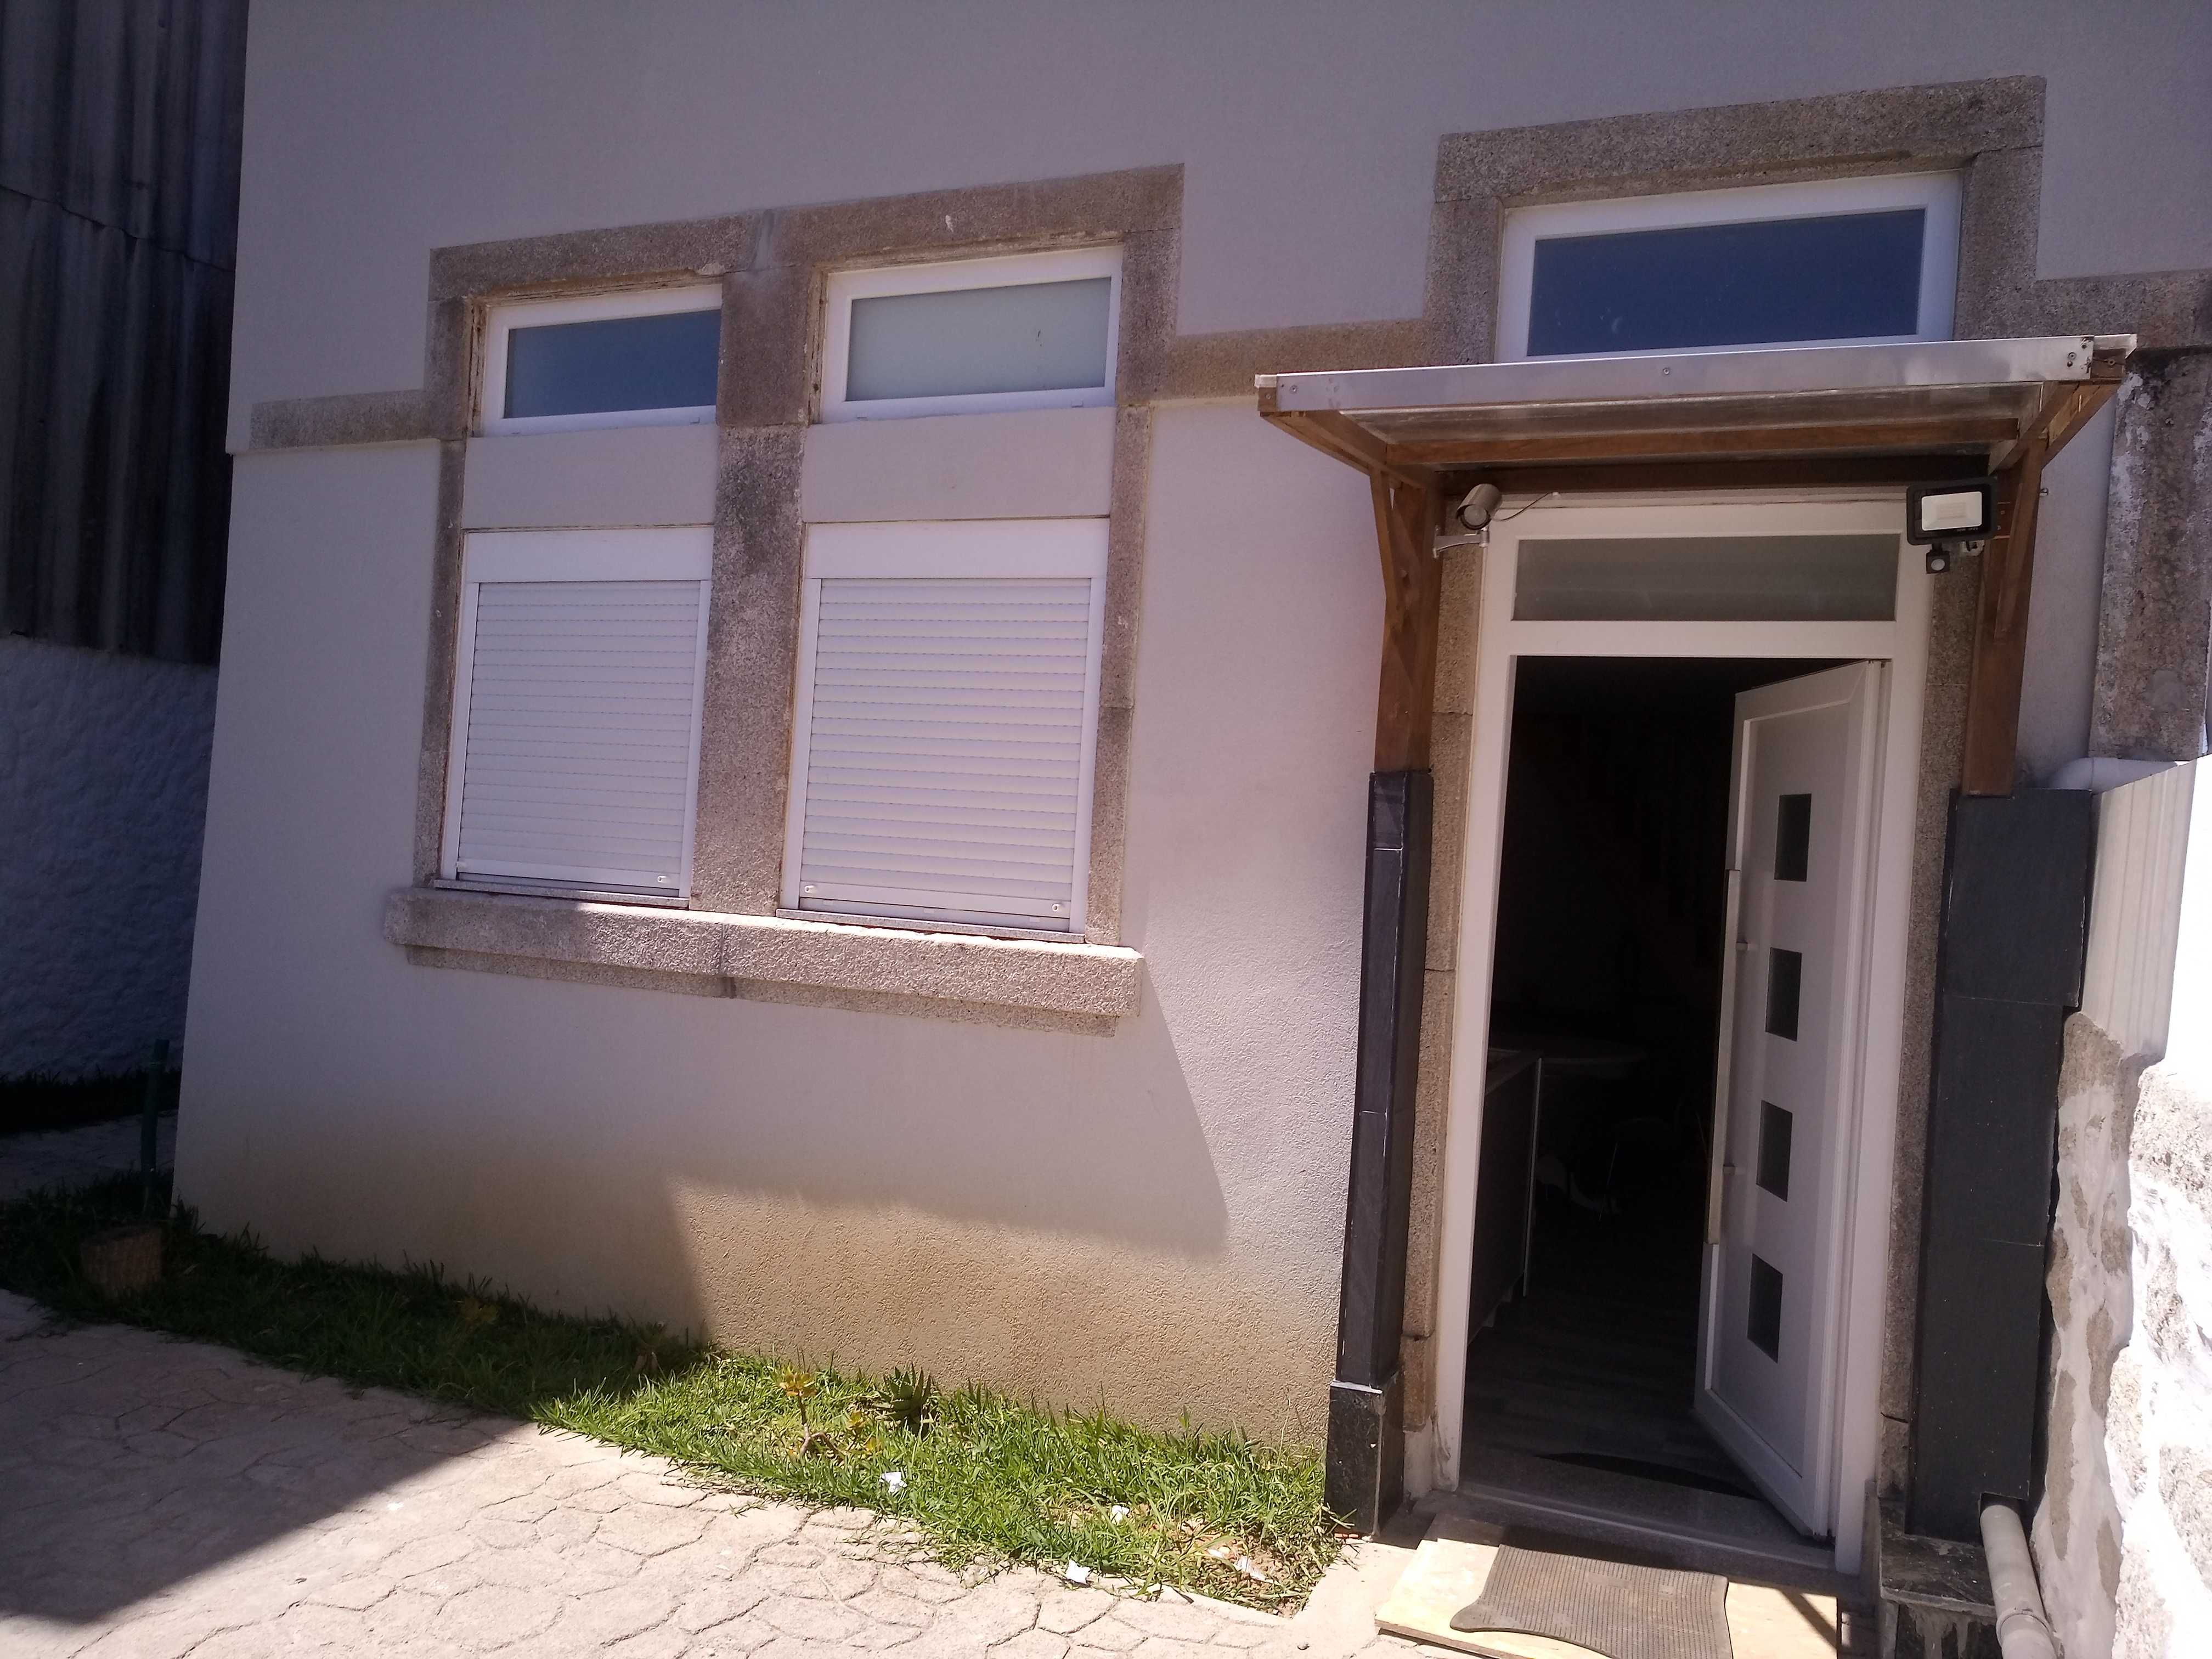 Casa mobilada para arrendar no Centro do Porto (T2)